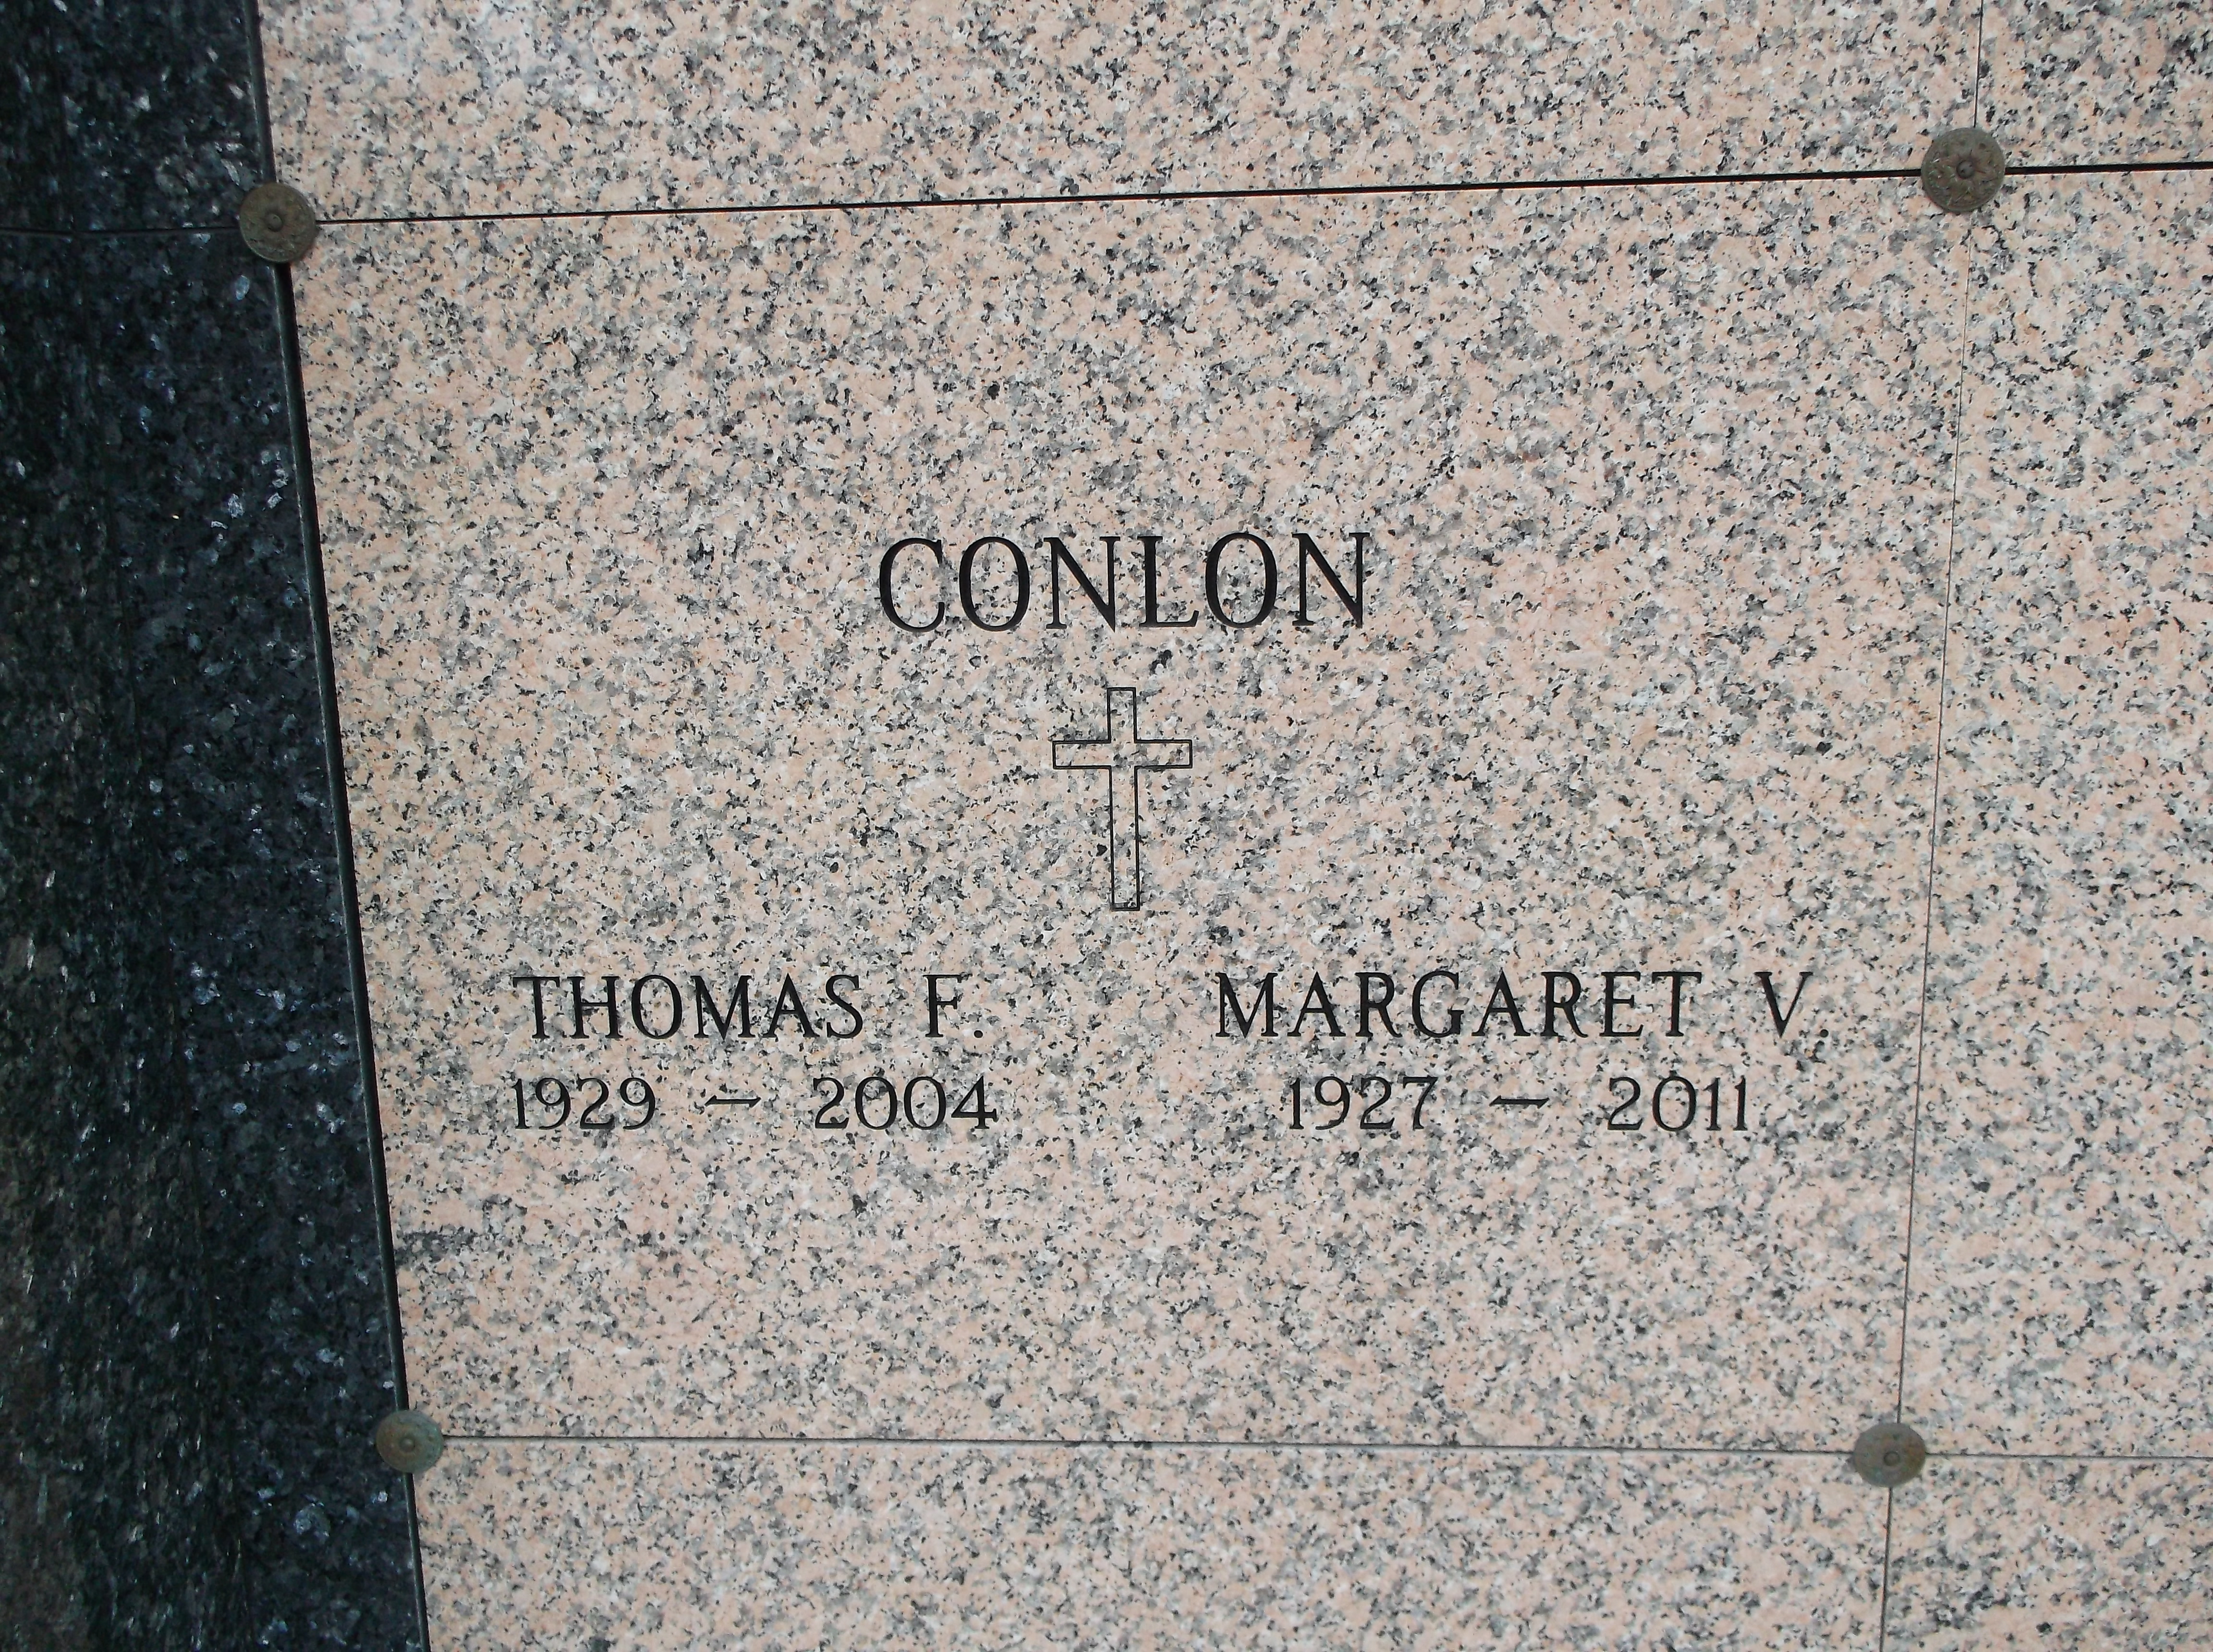 Margaret V Conlon